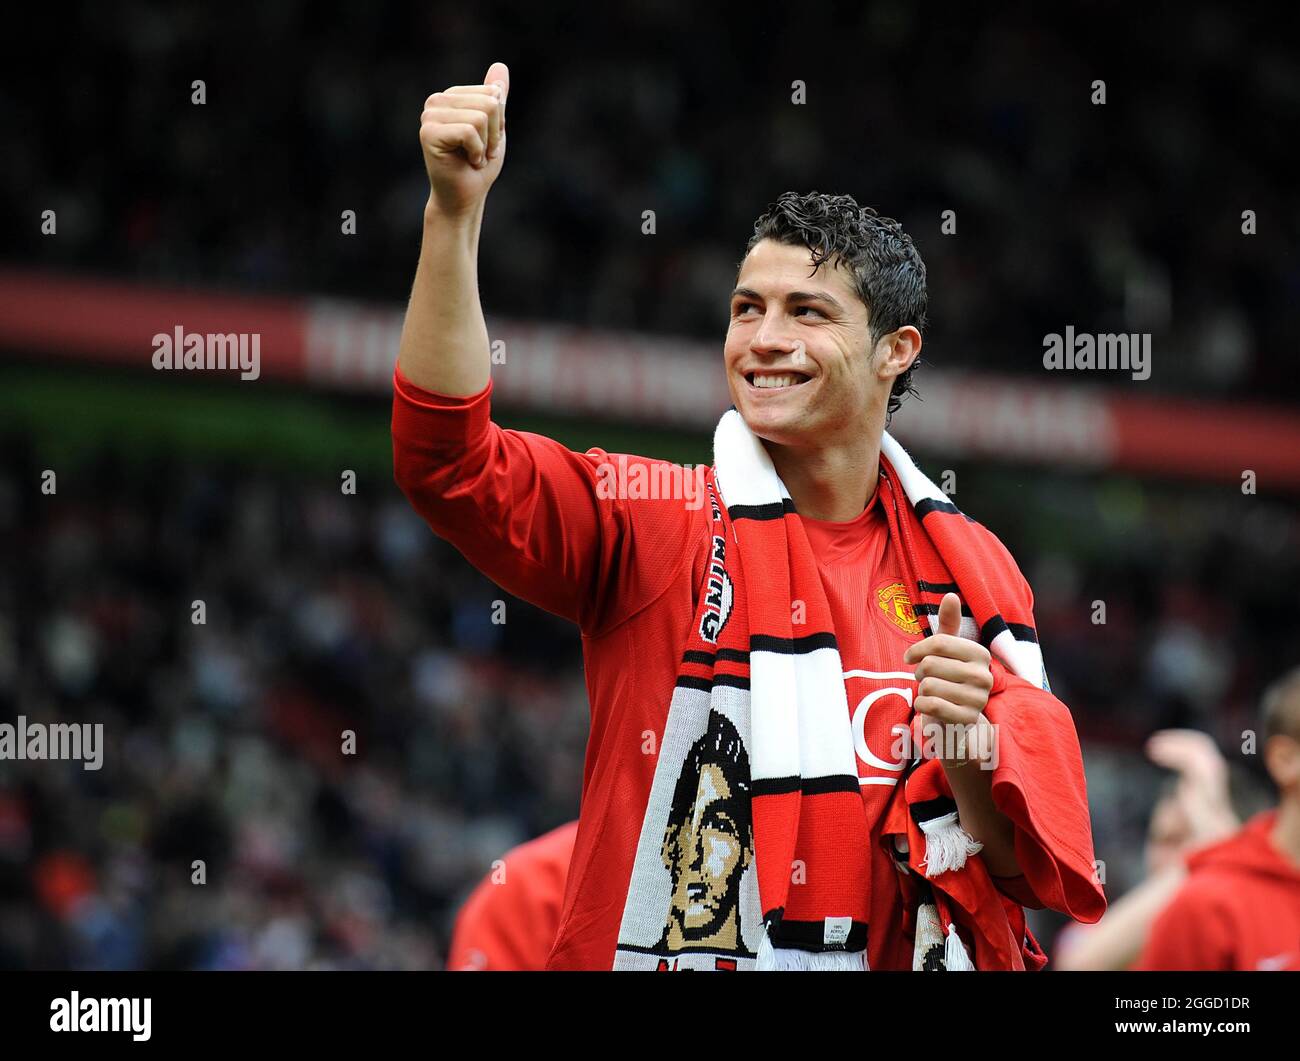 Aktenfoto vom 23-05-2008 von Cristiano Ronaldo von Manchester United. Ausgabedatum: Dienstag, 31. August 2021. Stockfoto